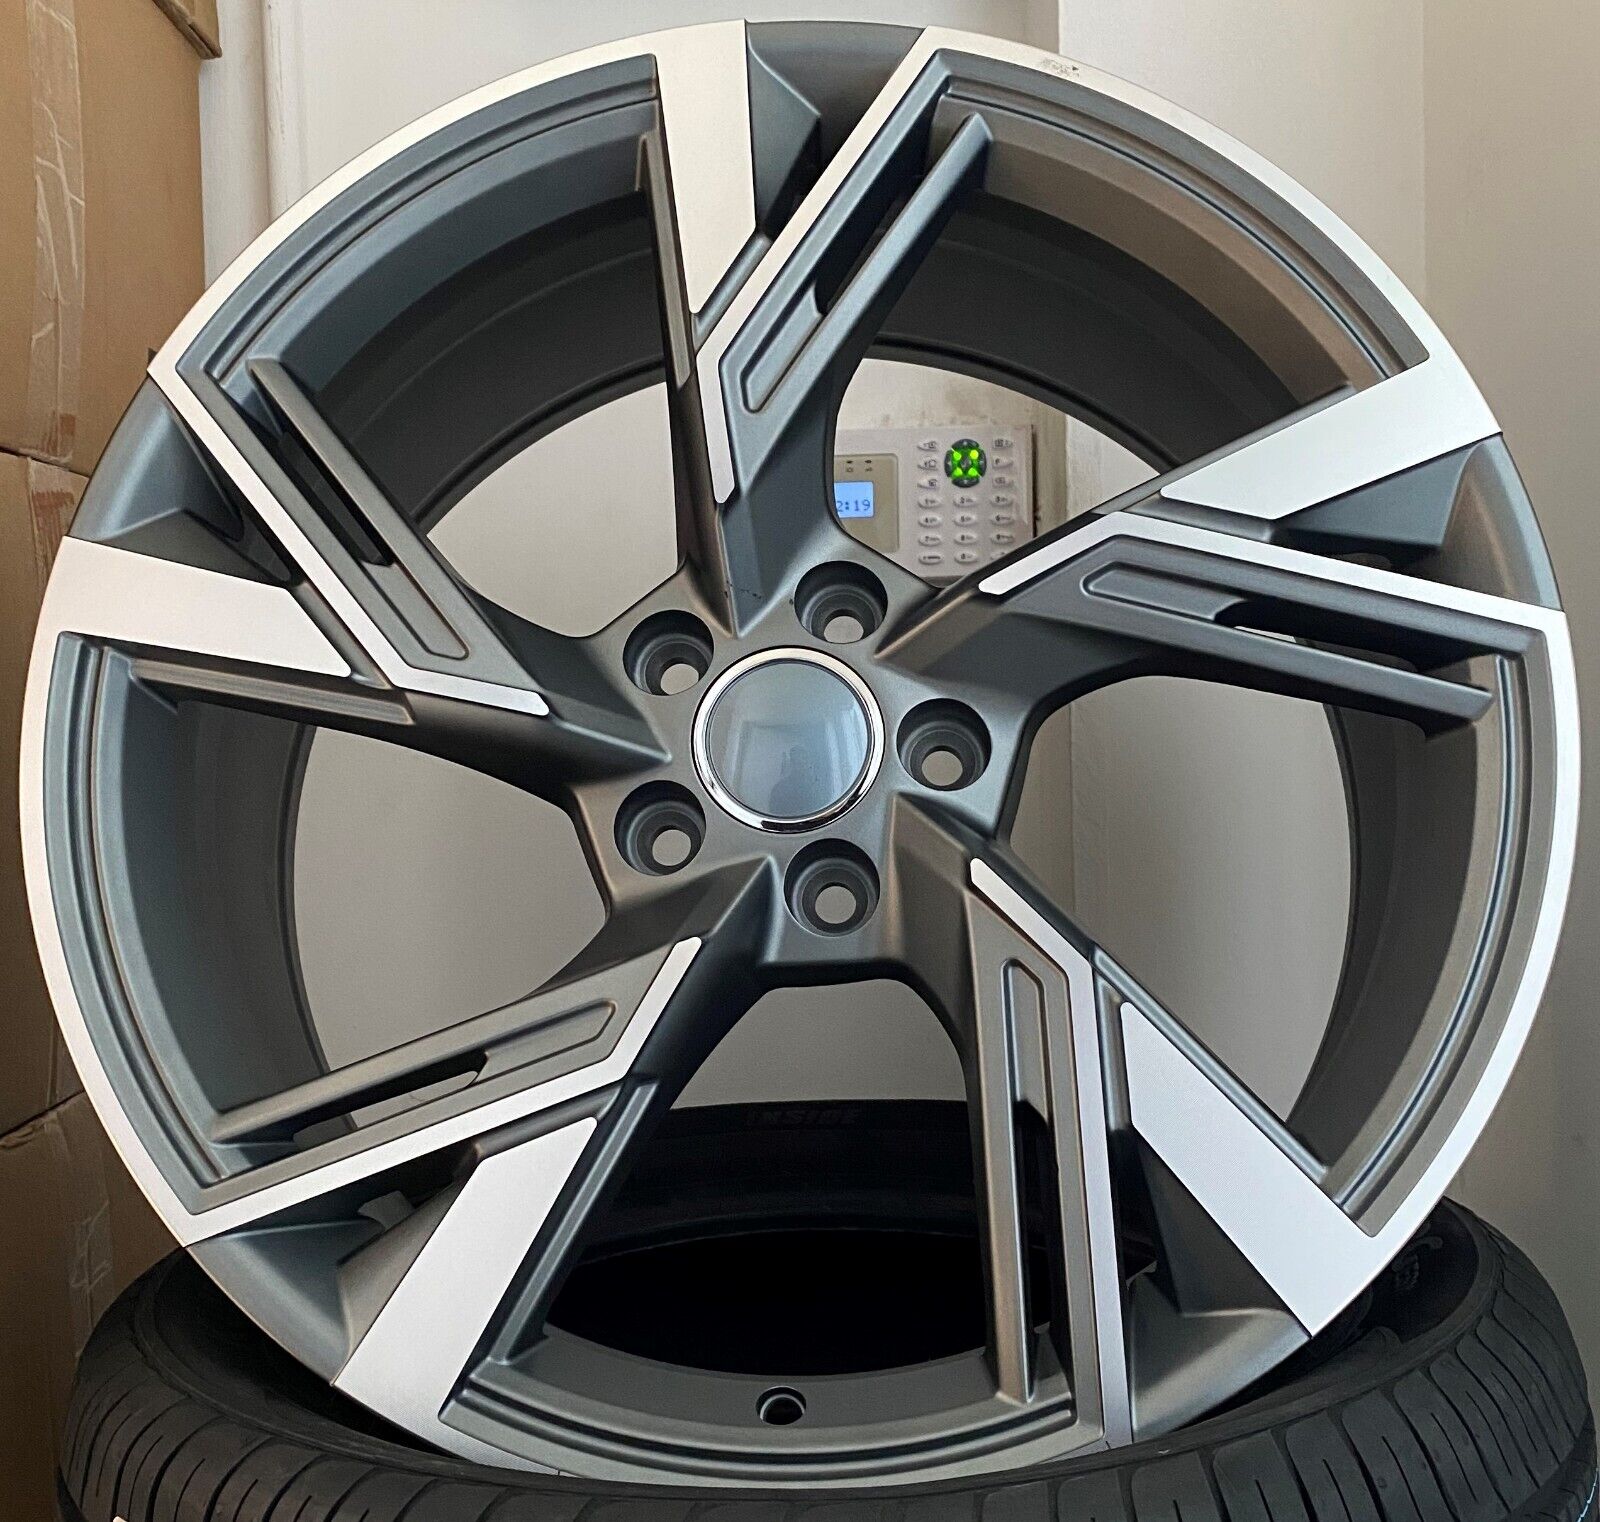 20"  Alloy Wheels (Audi)   rs6 e 